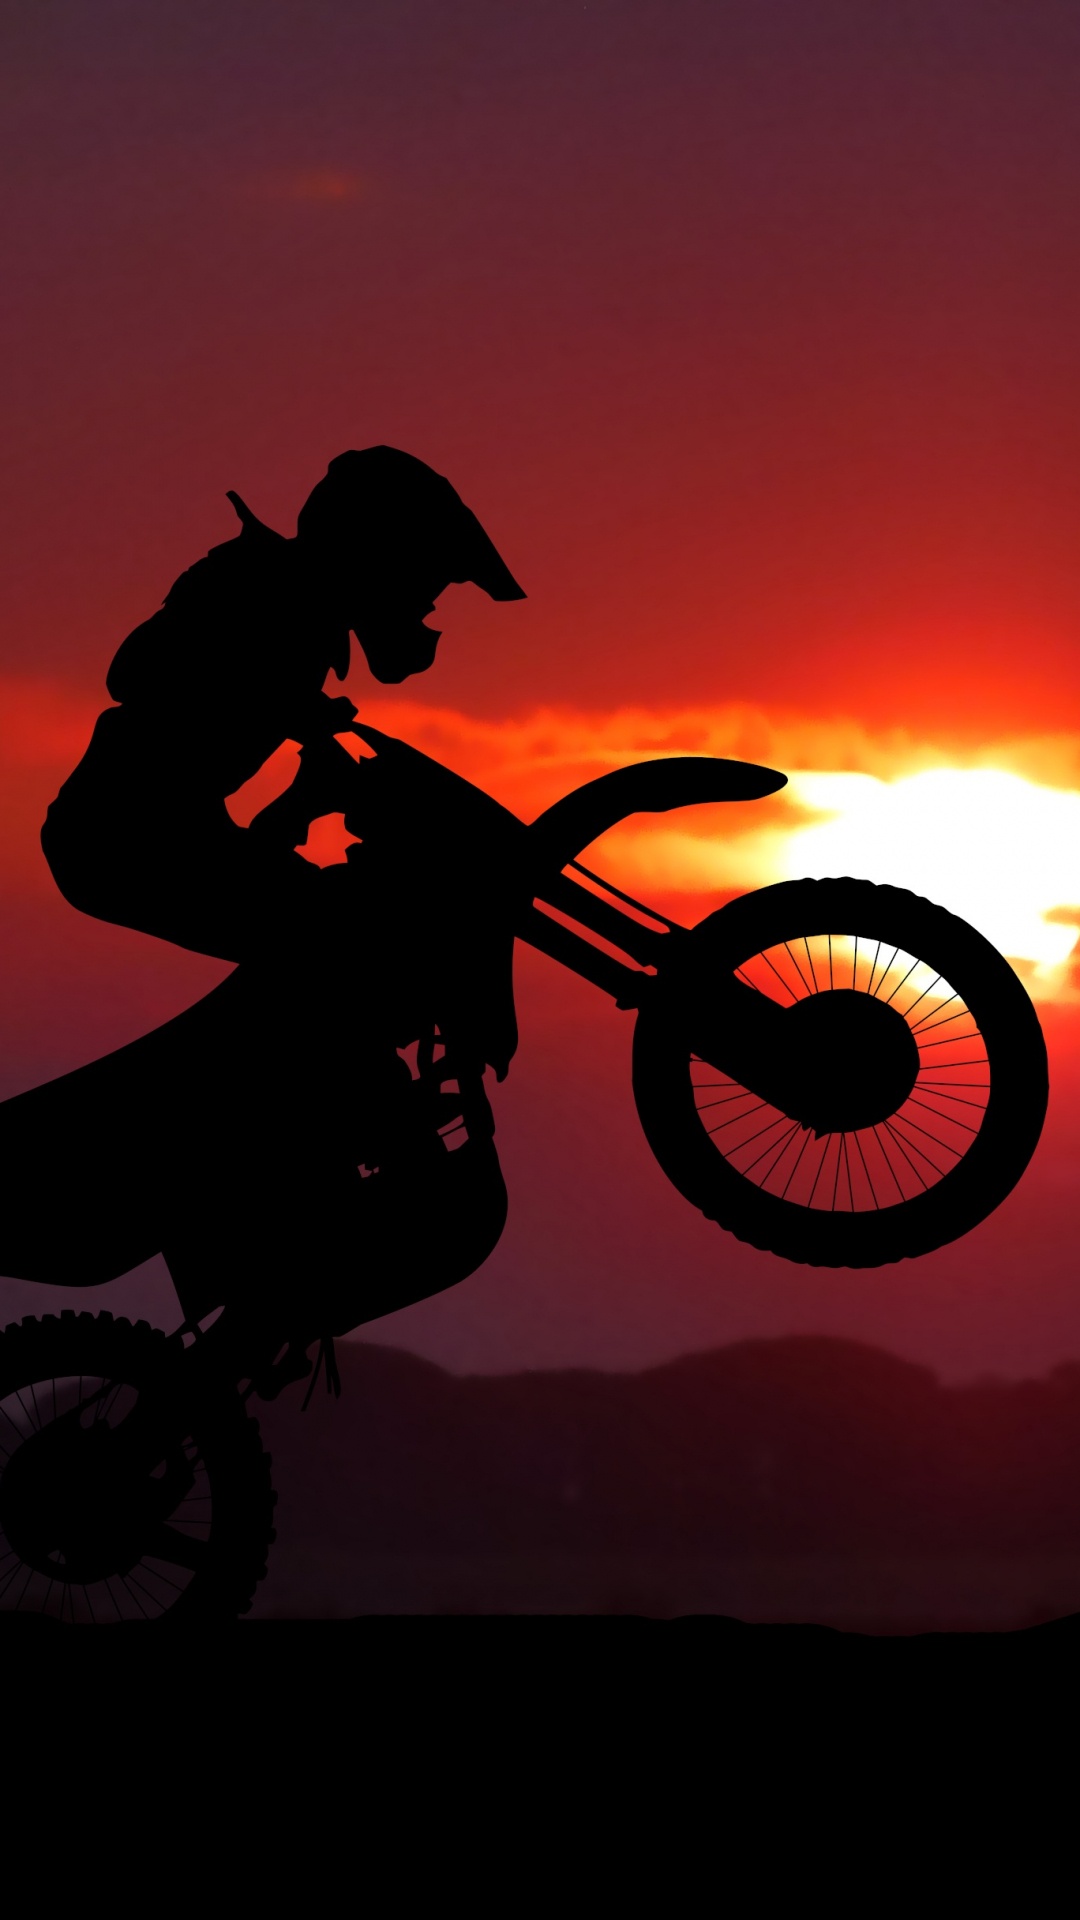 摩托车运动, 骑摩托车特技, 越野, 自由式的摩托车越野赛, 摩托车越野赛 壁纸 1080x1920 允许